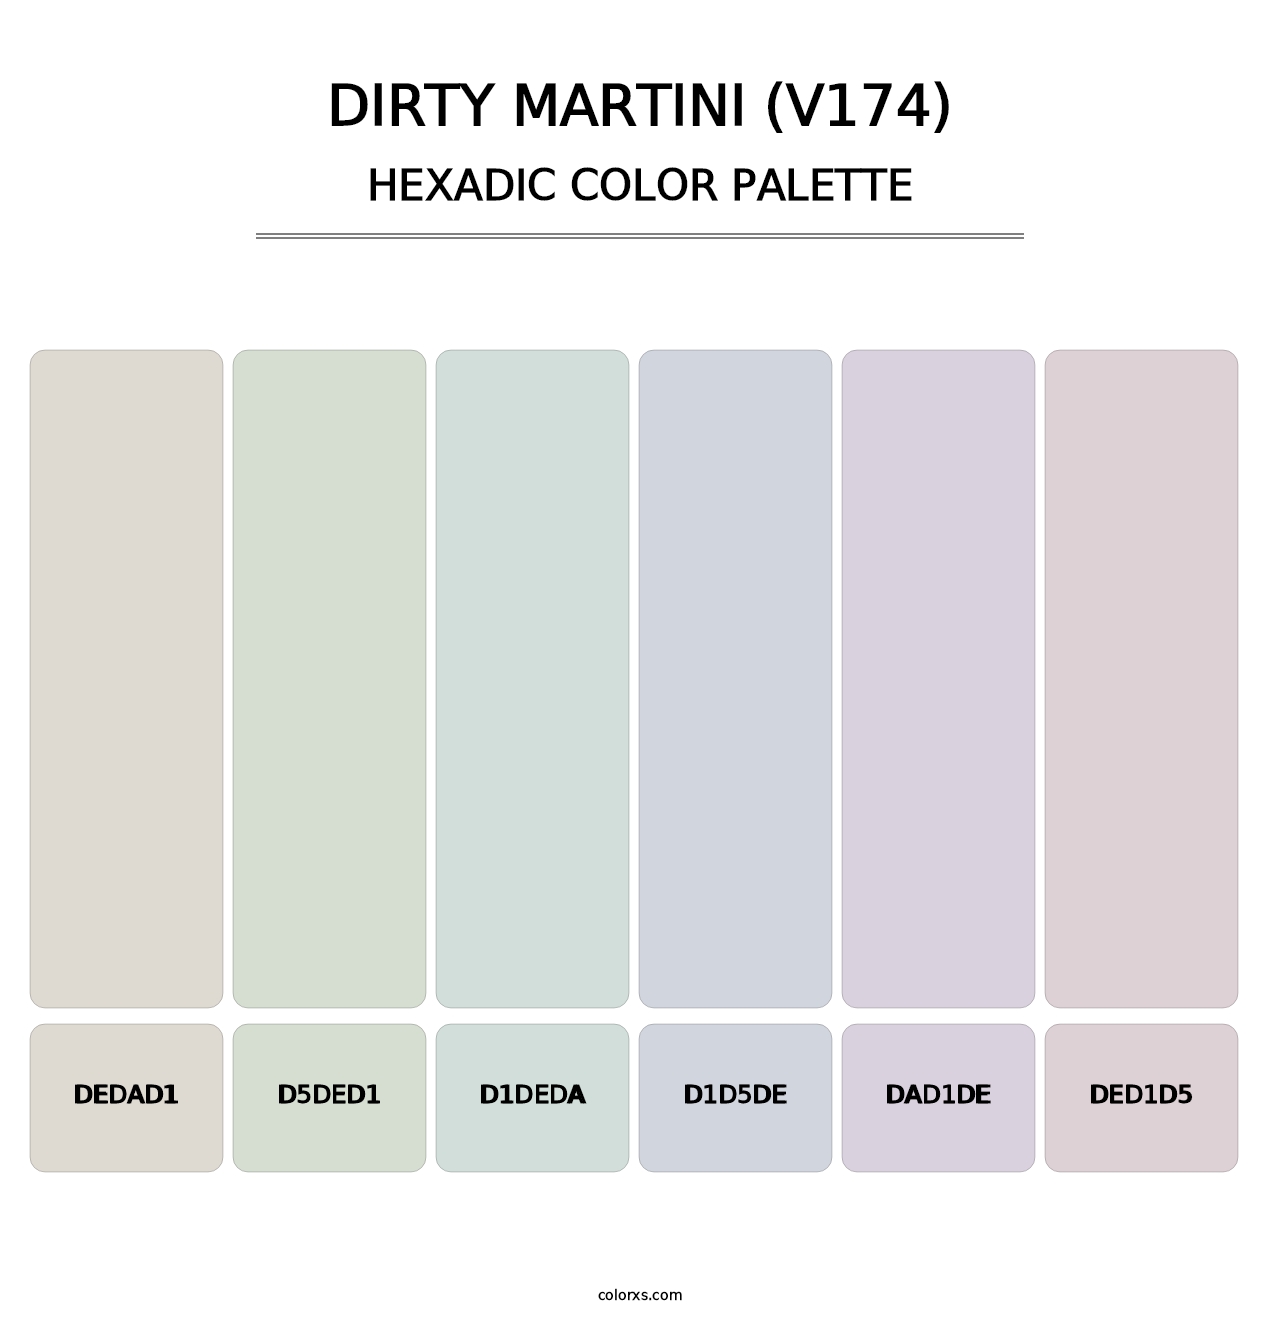 Dirty Martini (V174) - Hexadic Color Palette